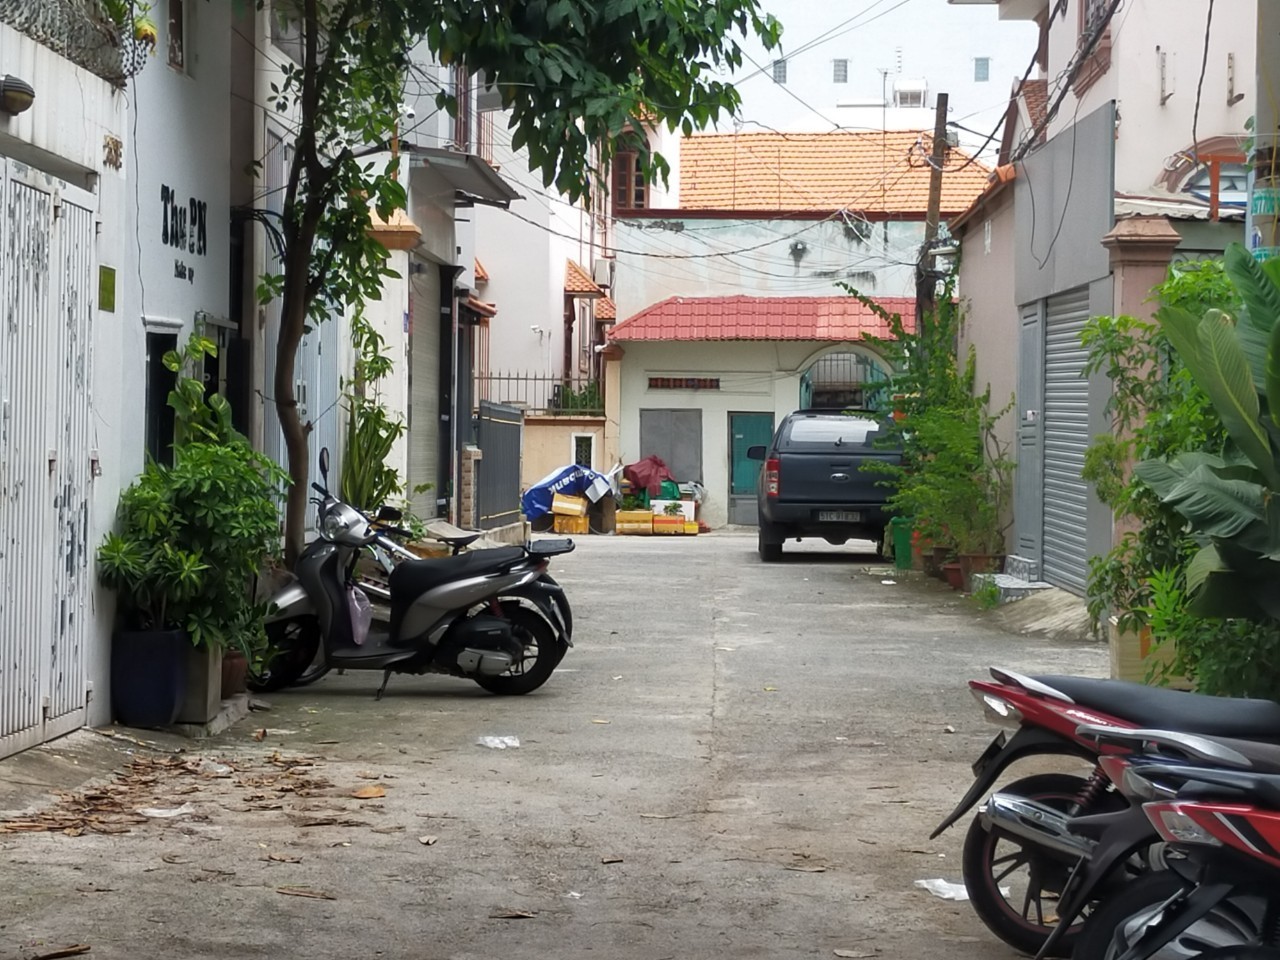 Bán nhà đường Nguyễn Xí, P13, quận Bình Thạnh, ngay chợ cầu Đỏ, khu sầm uất, 4x20m.